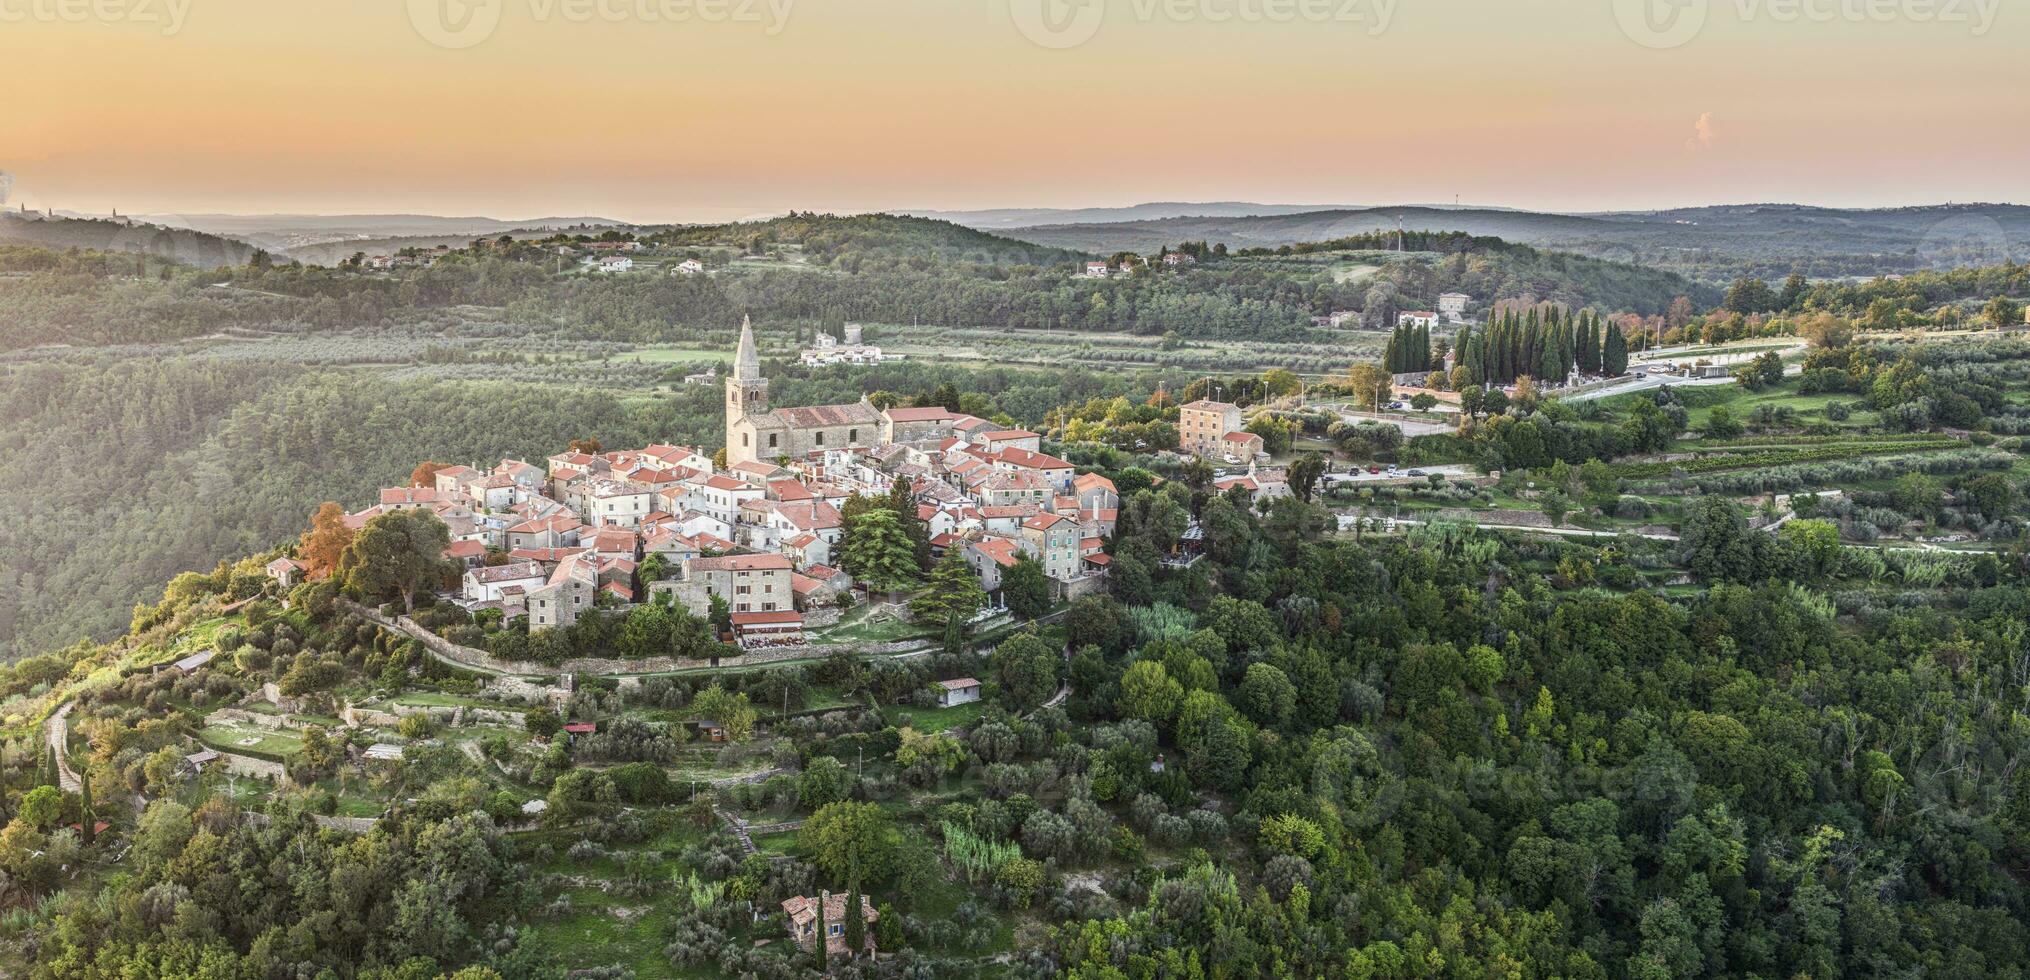 dar panorama over- de historisch kunstenaars stad- van groznjan in centraal istrië Bij zonsondergang foto